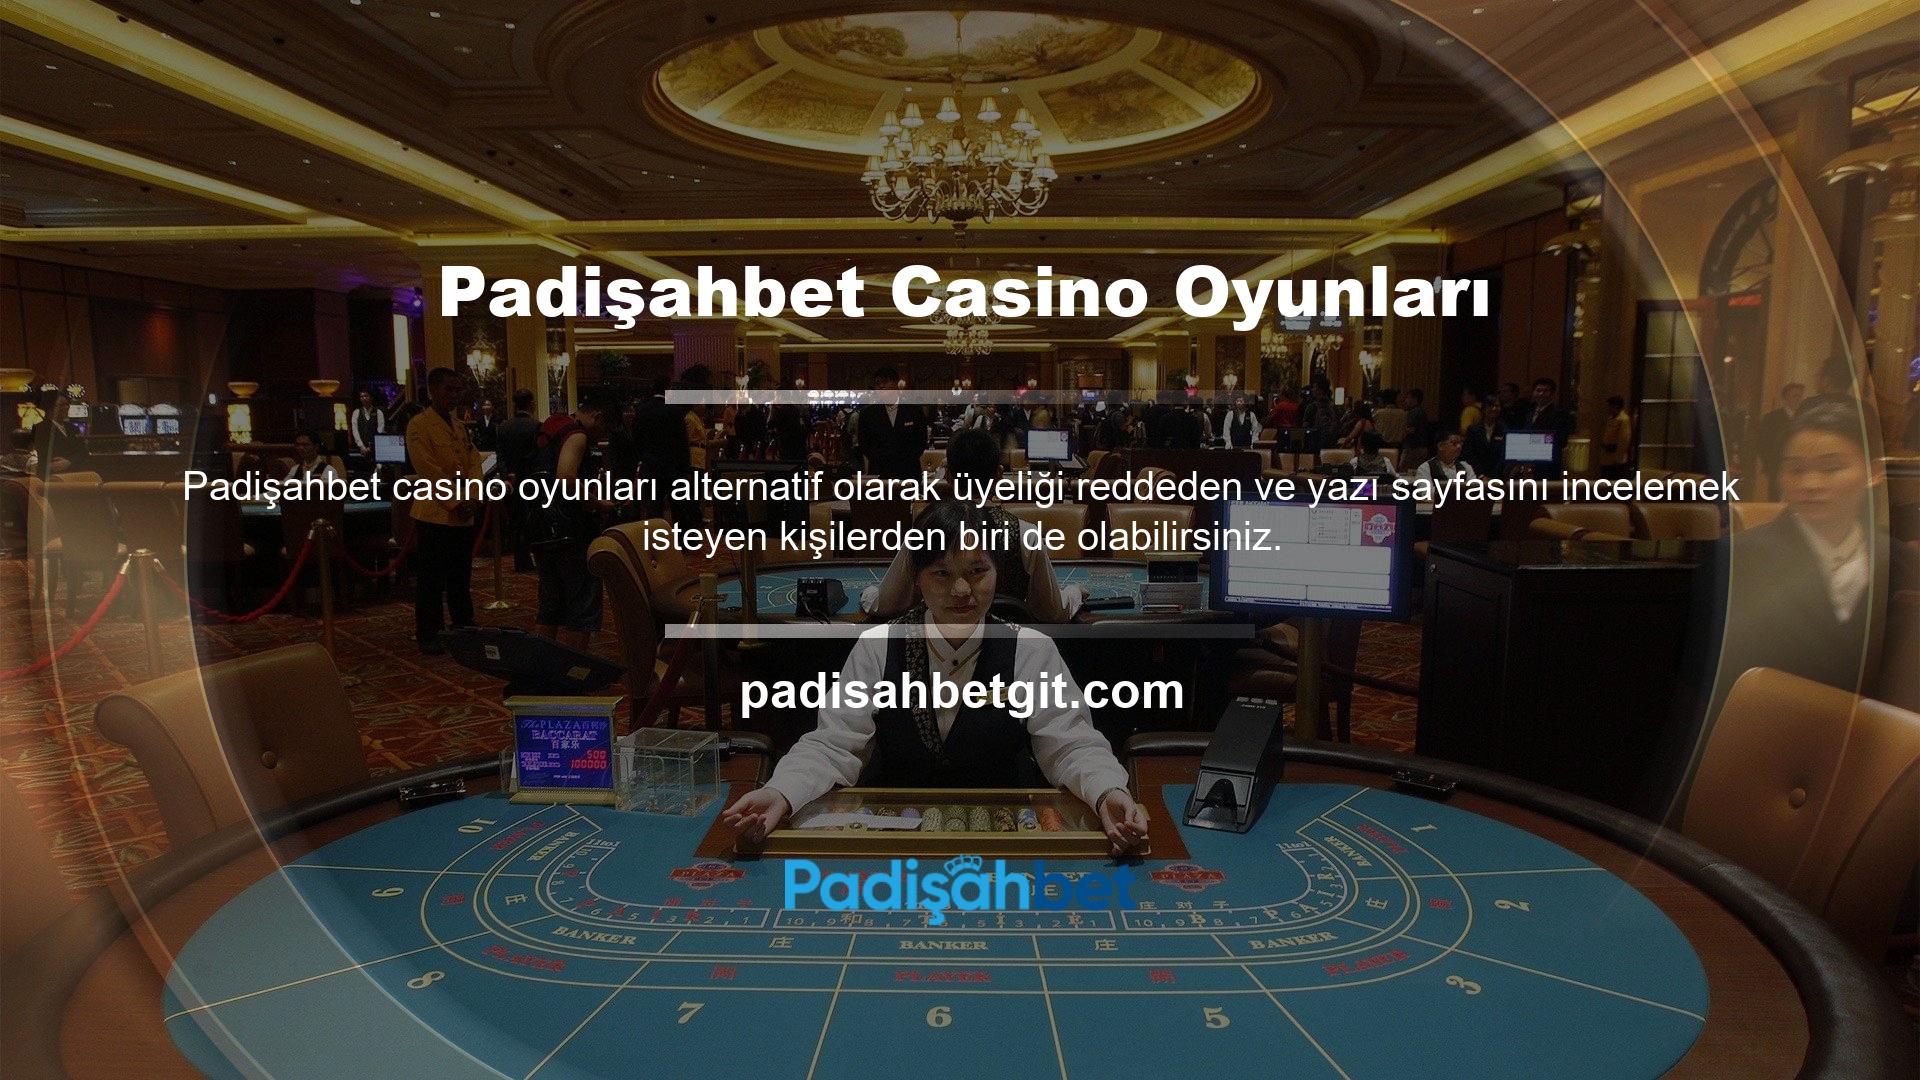 Canlı Casino banner'ını ana sayfada bulabilirsiniz